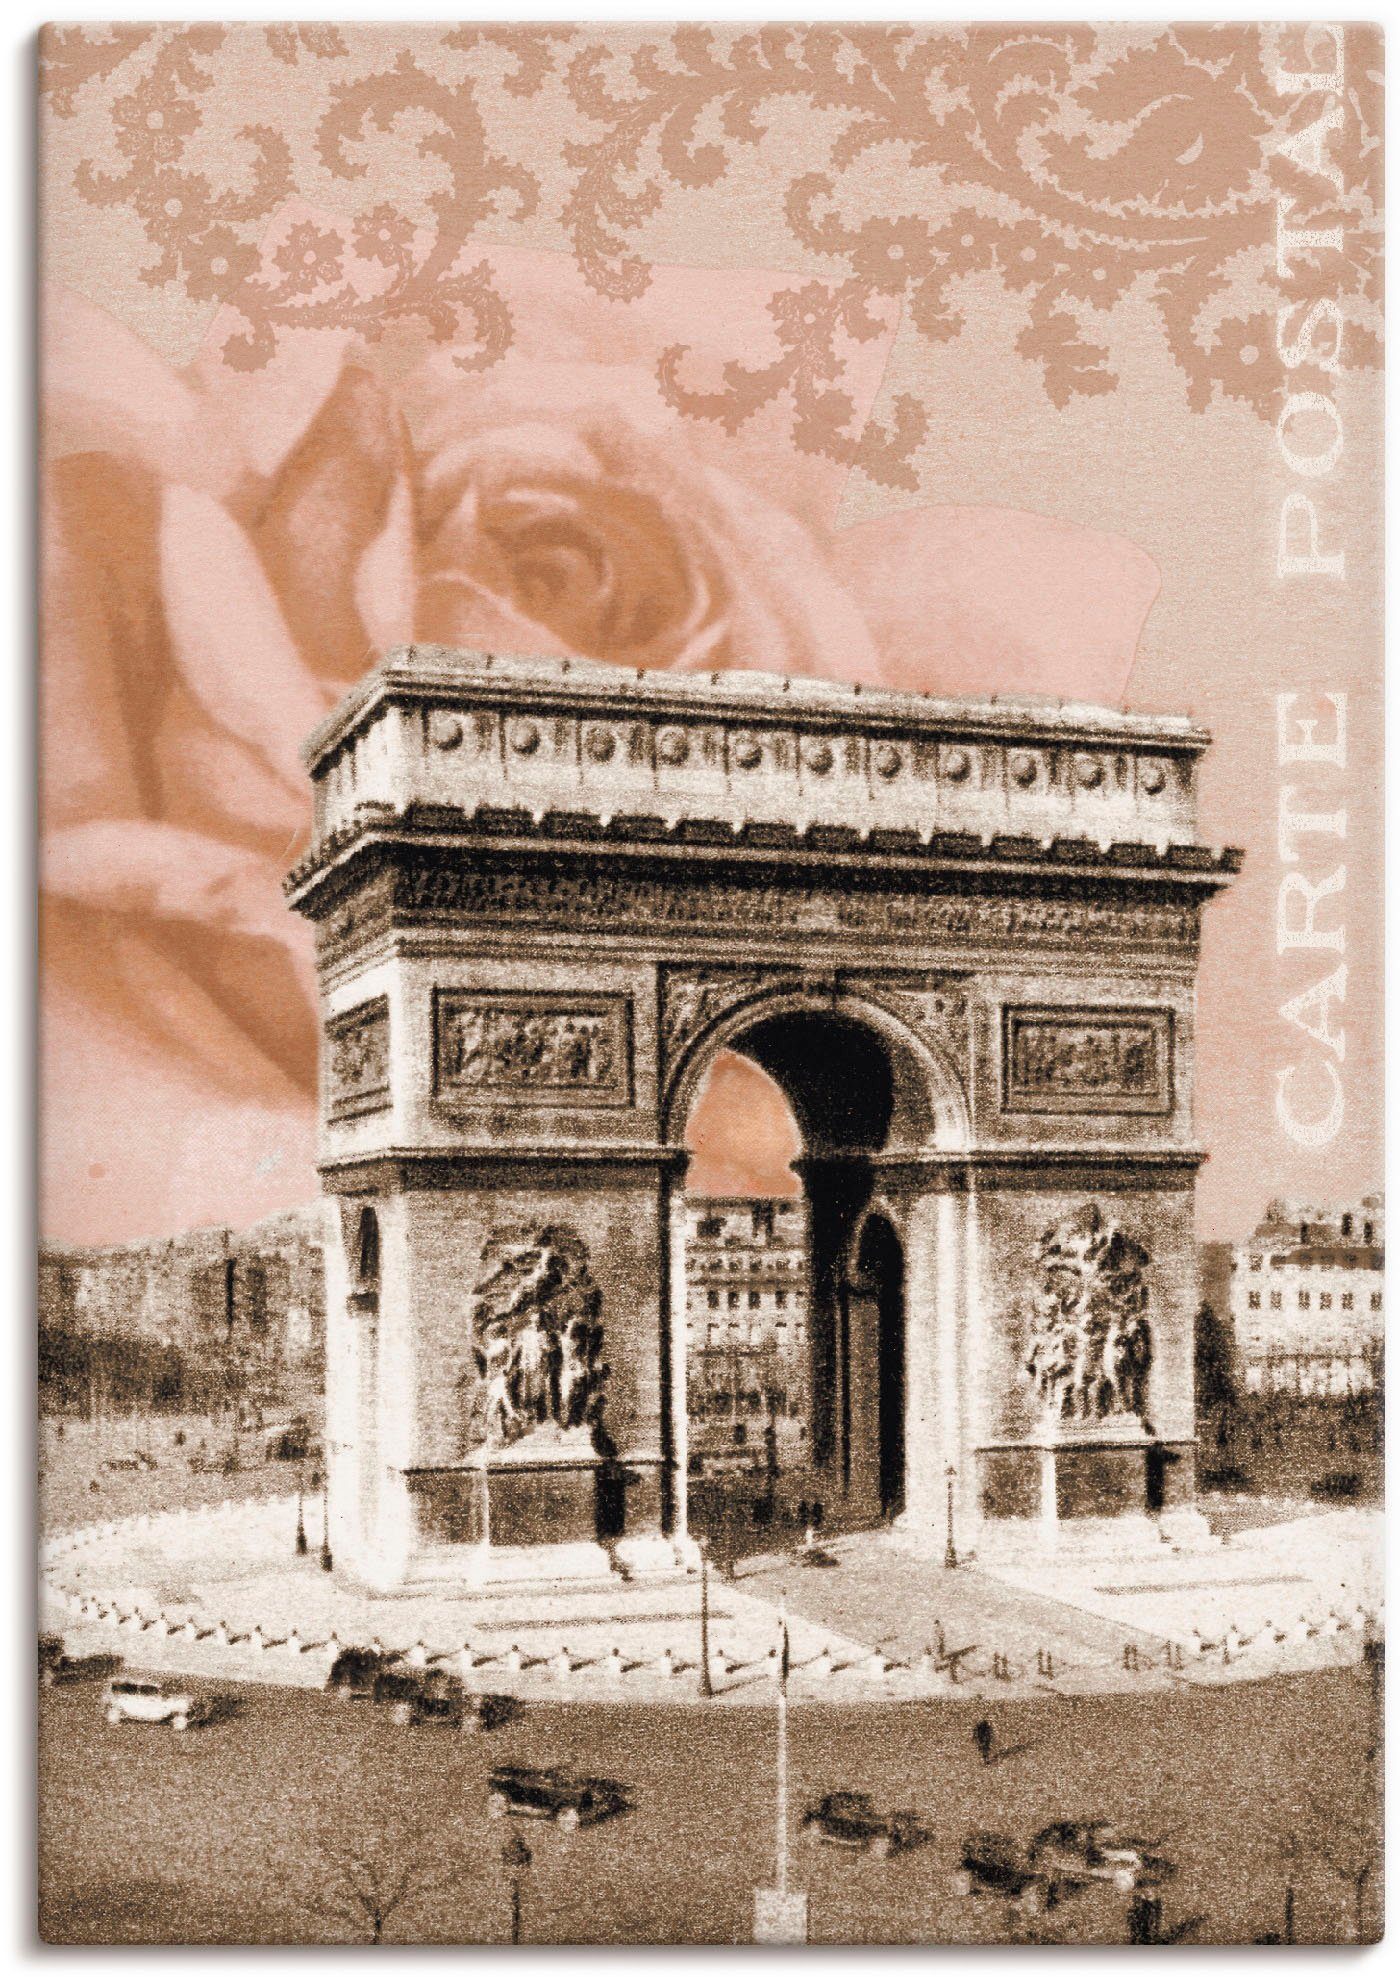 Artland Artprint Parijs - Arc de Triomphe in vele afmetingen & productsoorten - artprint van aluminium / artprint voor buiten, artprint op linnen, poster, muursticker / wandfolie o